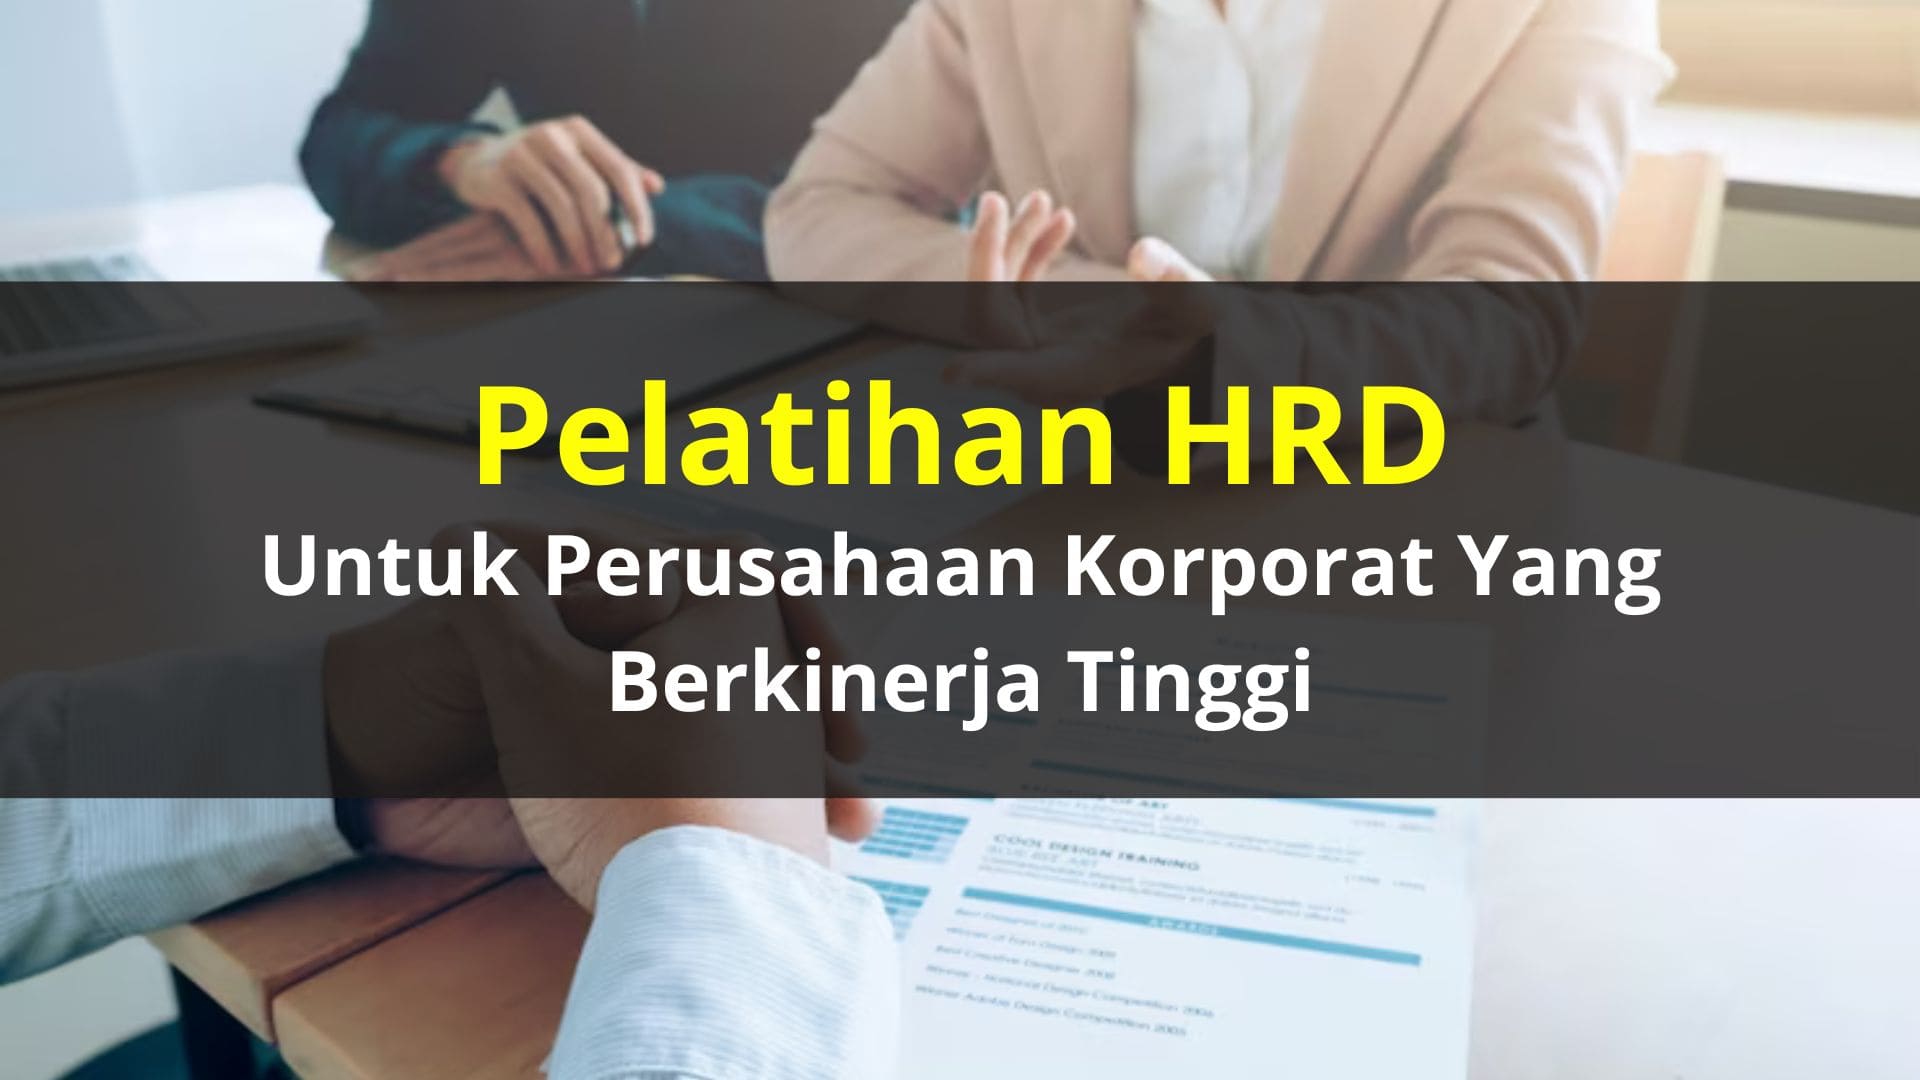 Pelatihan HRD untuk Perusahaan Korporat yang Berkinerja Tinggi